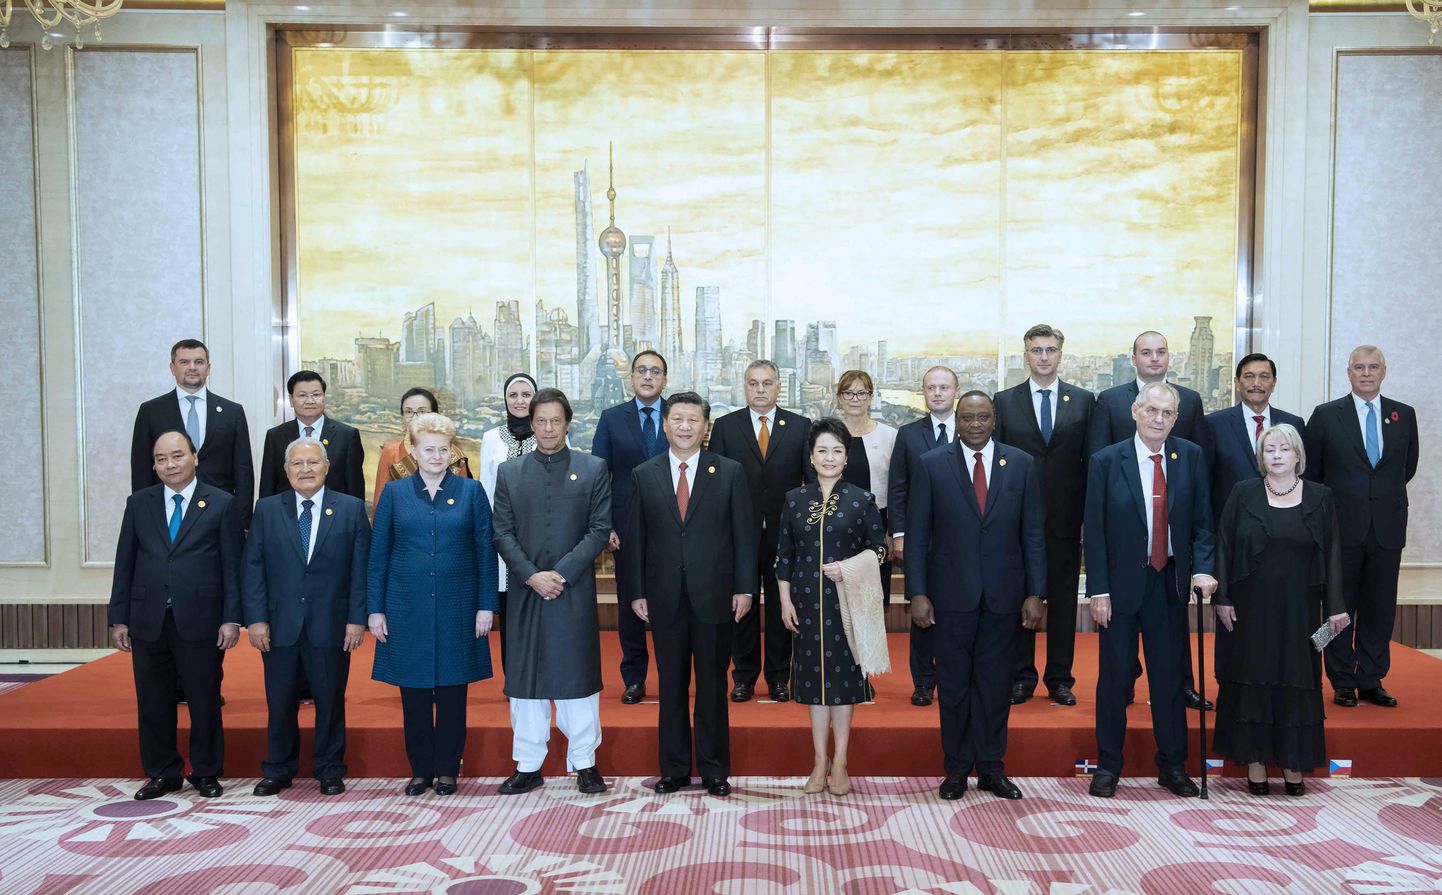 Hiina president Xi Jinping koos abikaasaga ühisfoto tegemisel välisliidritega, kes osalevad esmaspäeval Shanghais algaval rahvusvahelisel impordimessil.